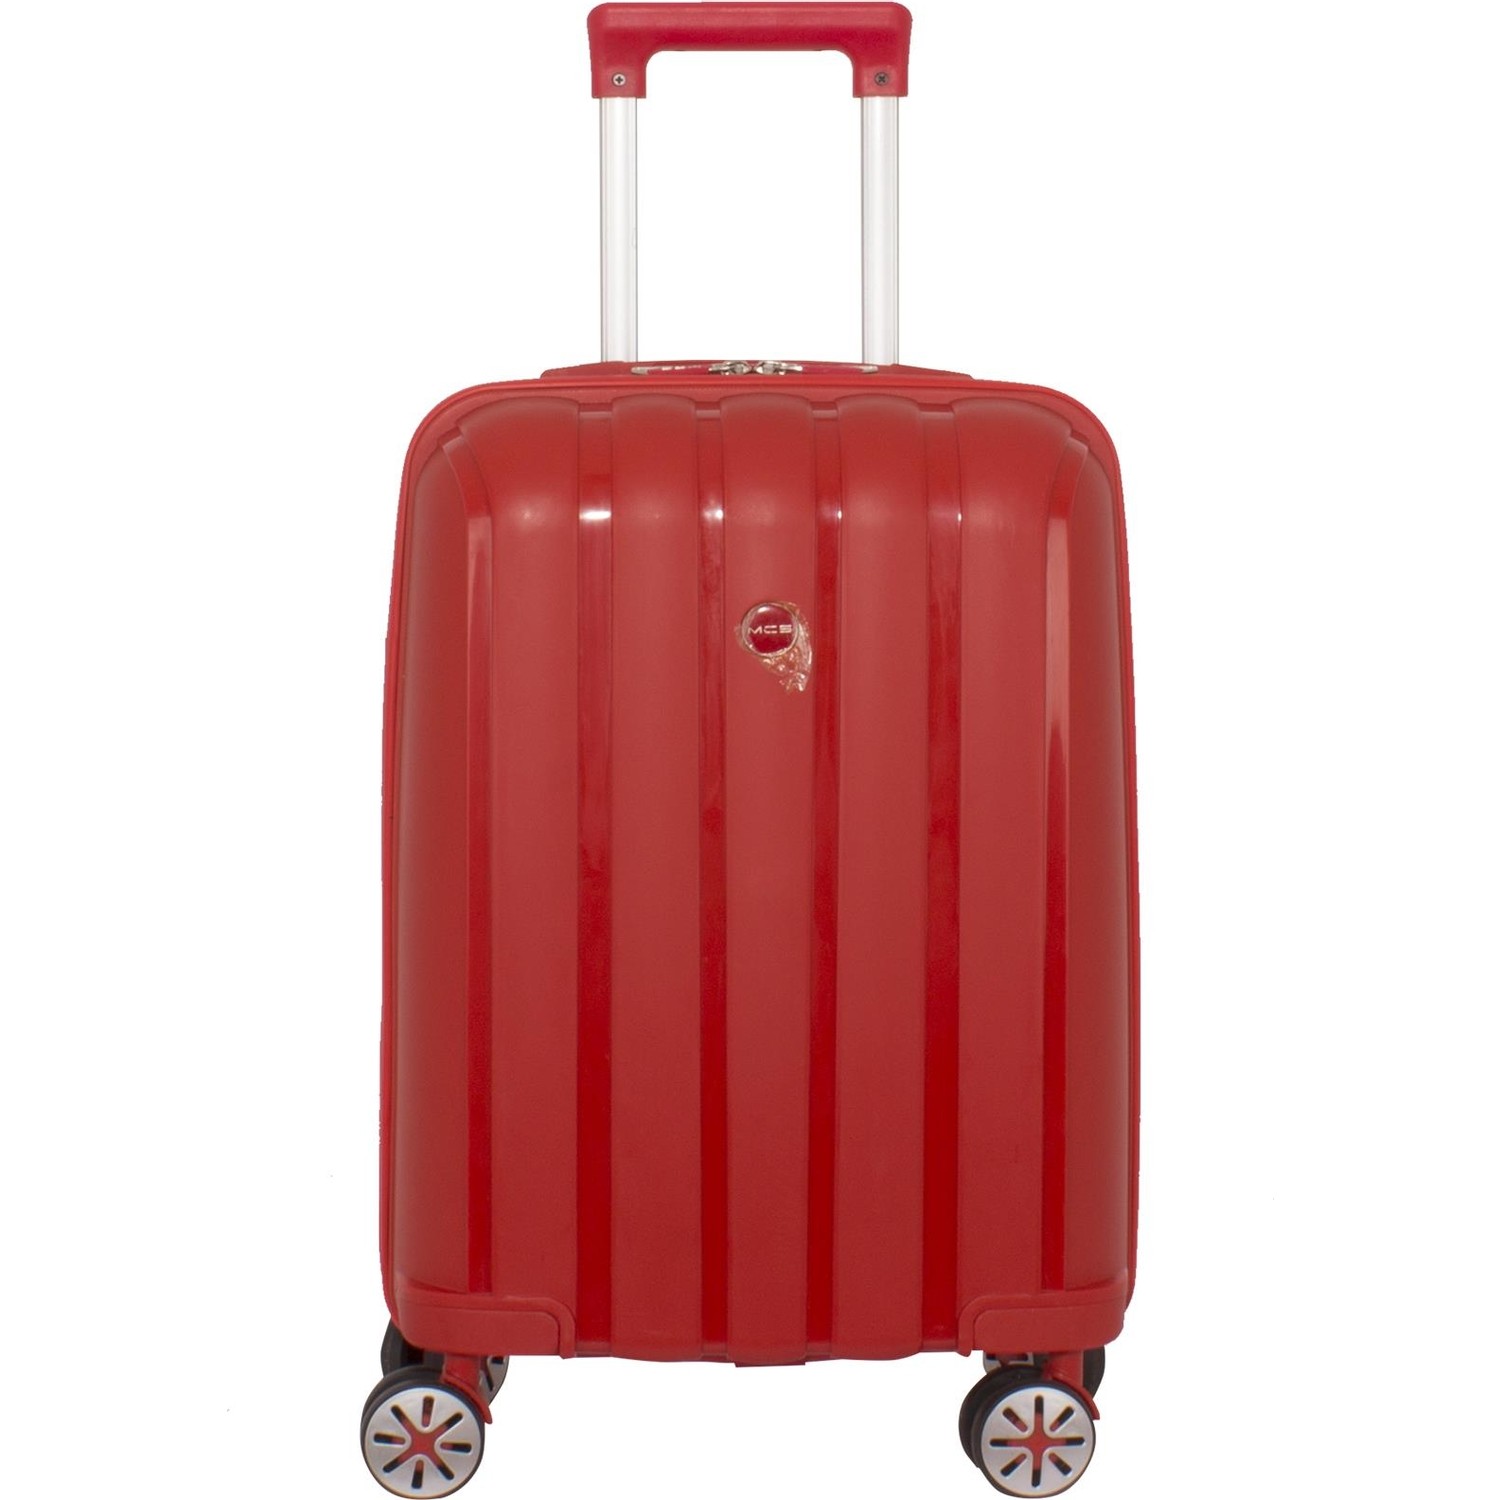 Маленький чемодан для ручьной клади из полипропилена MCS V305 S RED! Для 8-10 кг! - 1